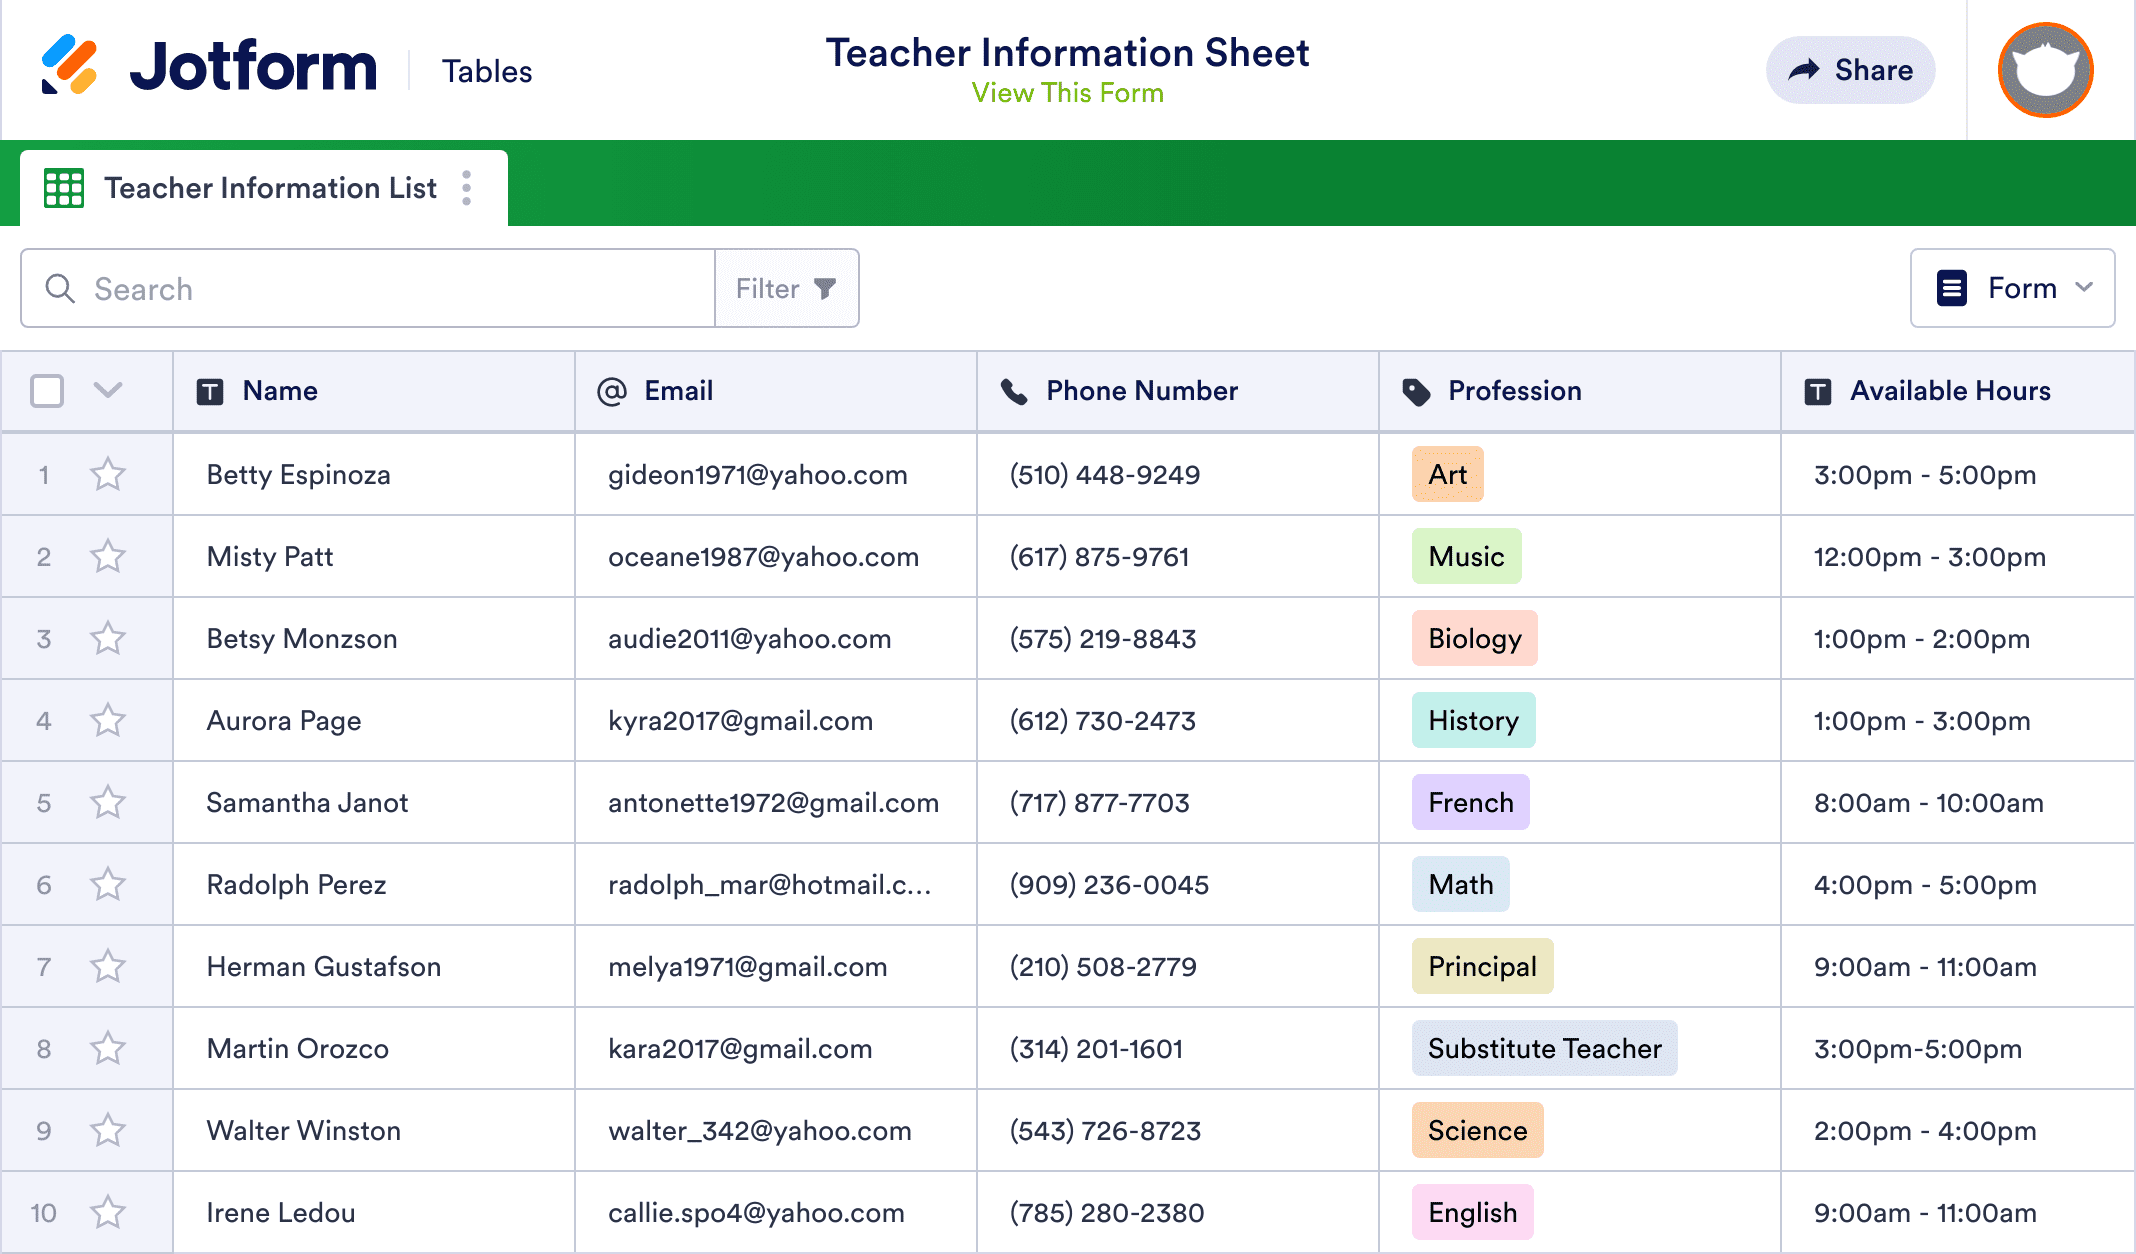 Teacher Information Sheet